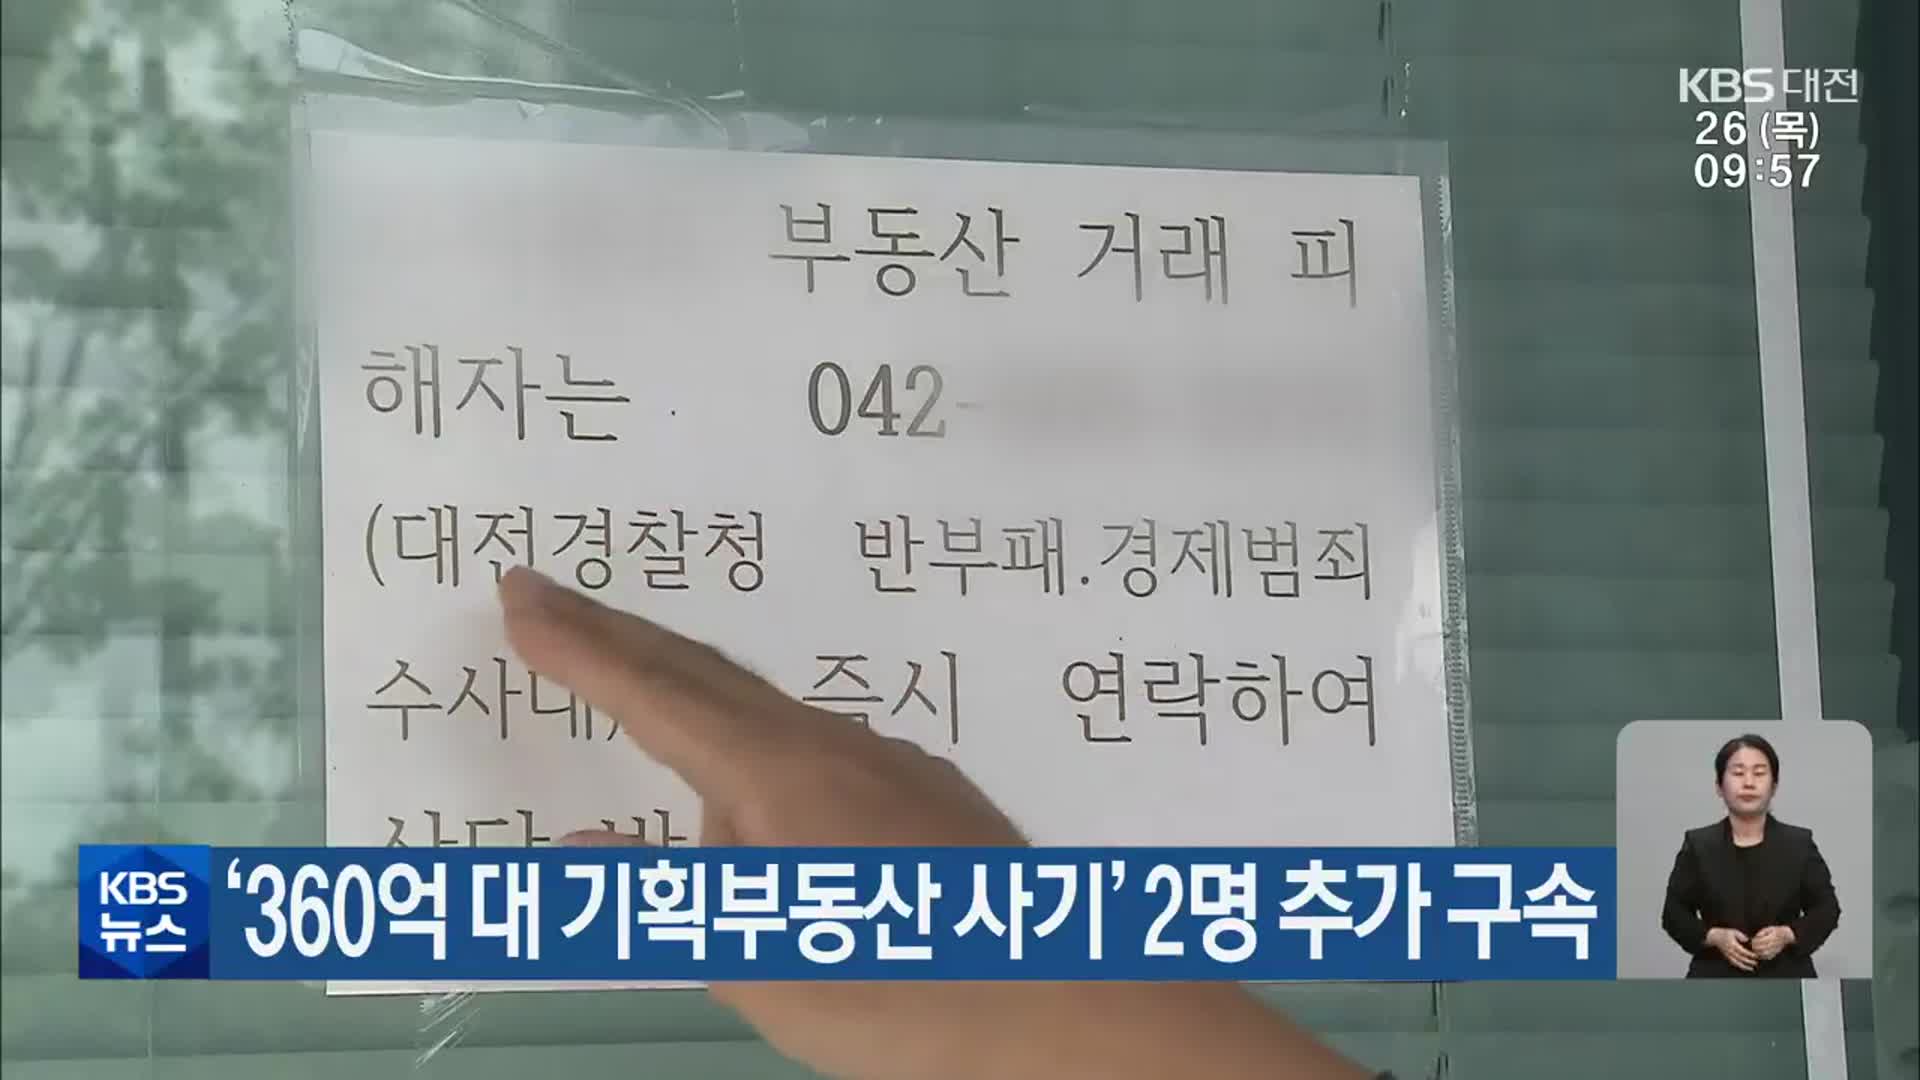 ‘360억 대 기획부동산 사기’ 2명 추가 구속